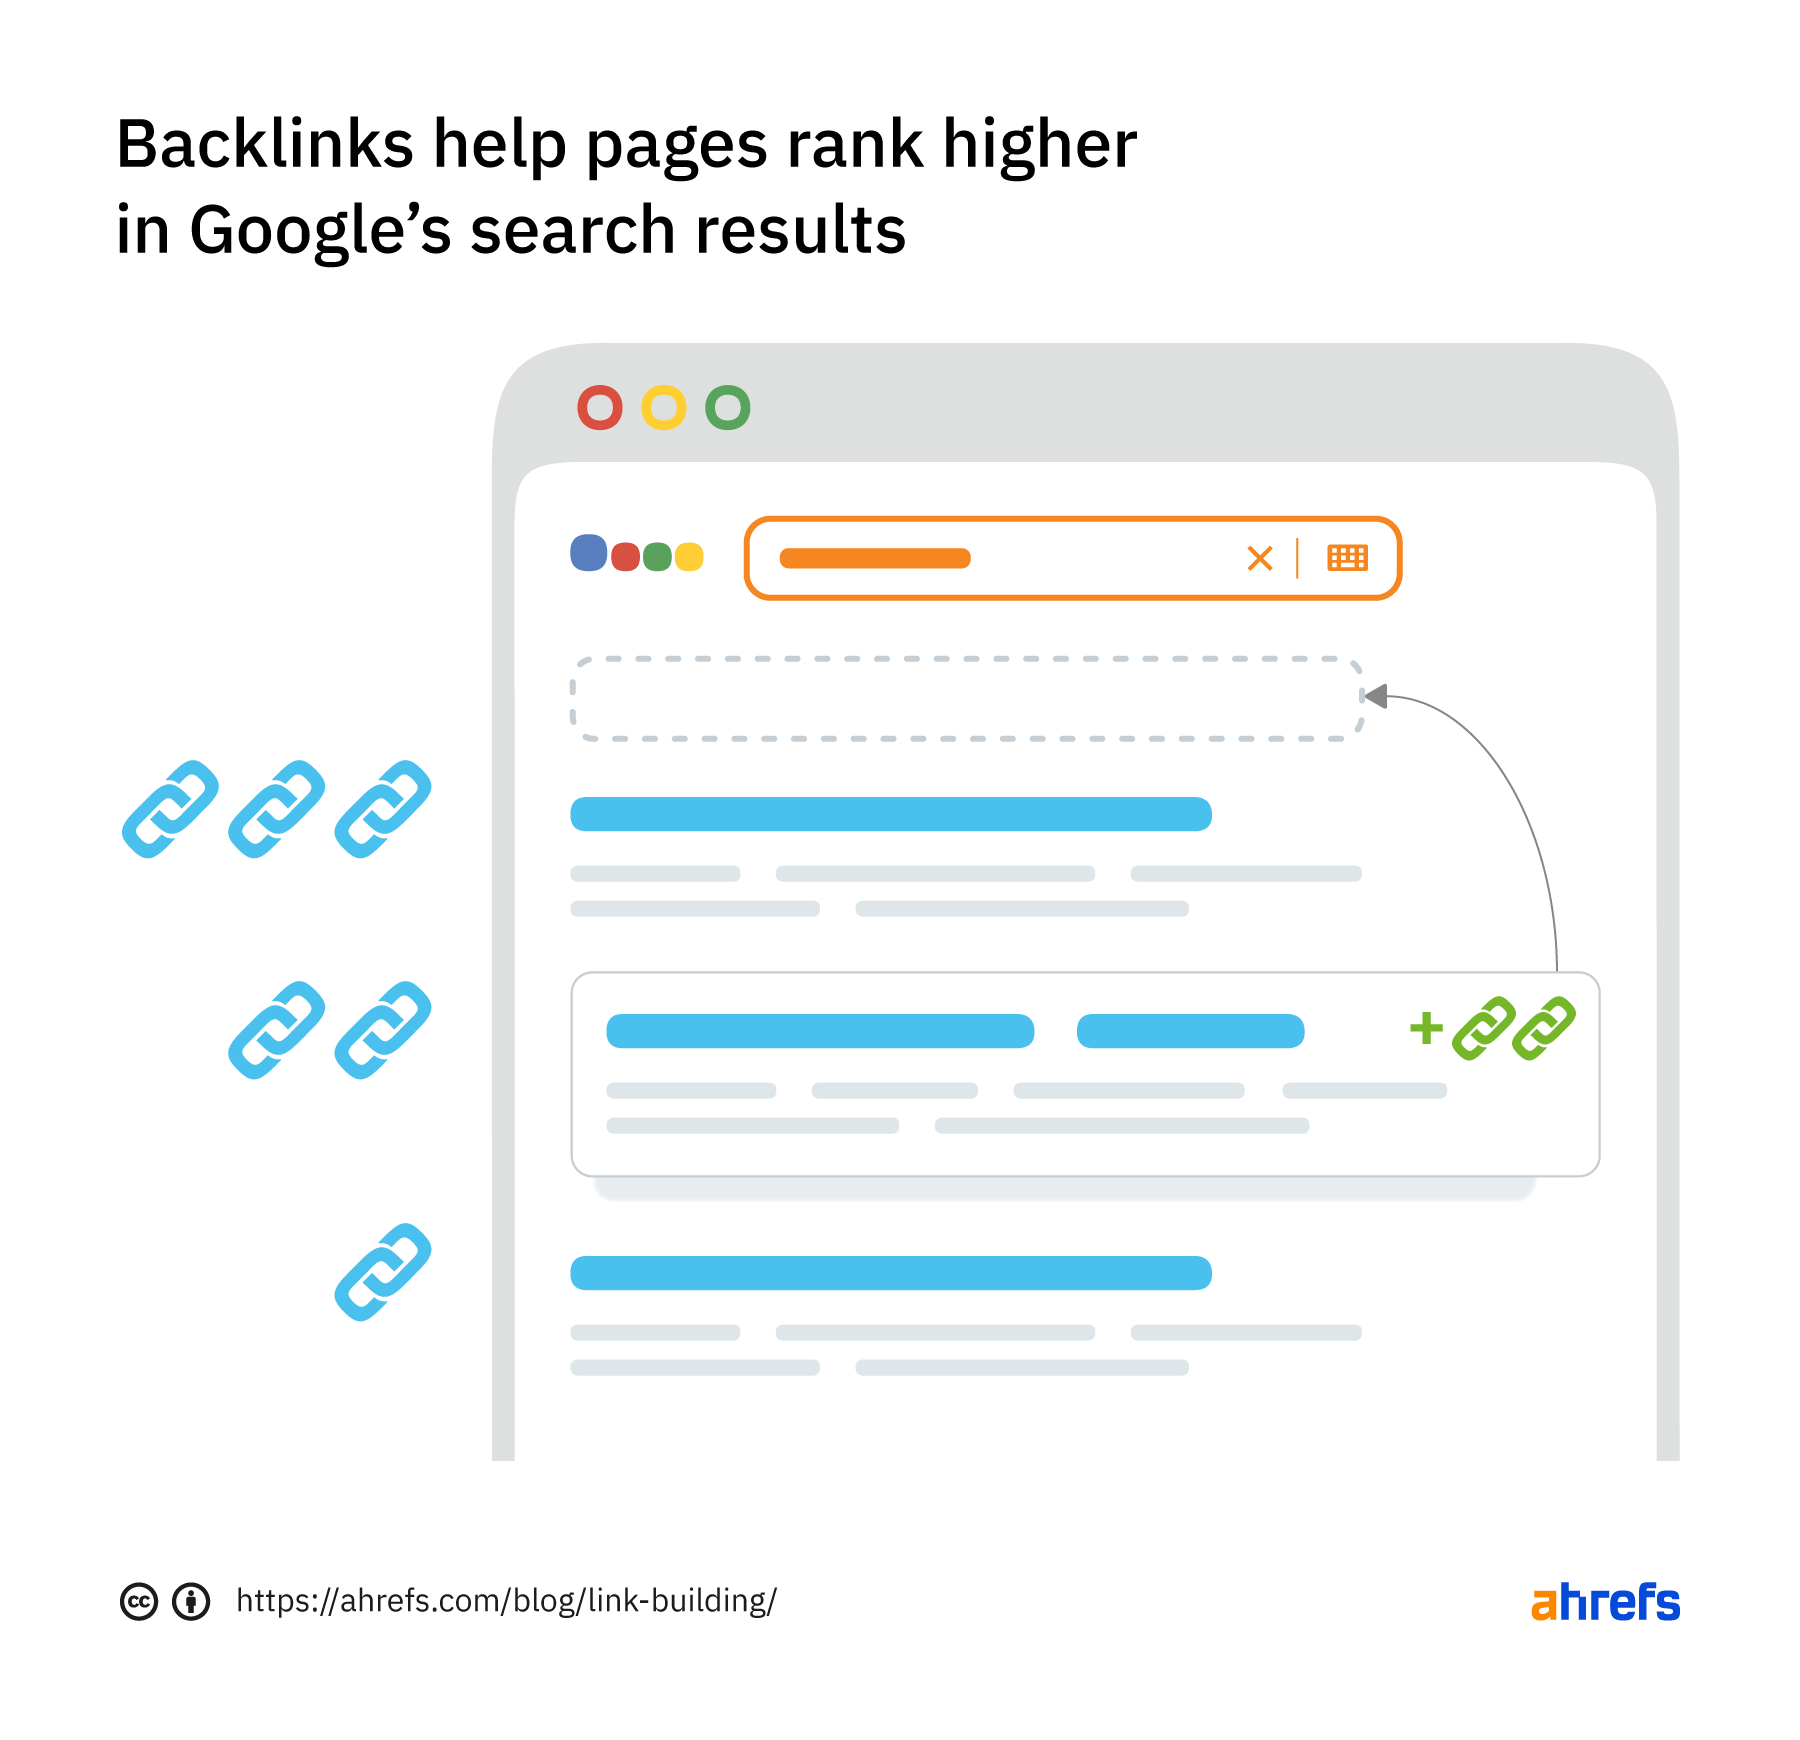 反向链接帮助网页在谷歌搜索结果中获得更高的排名